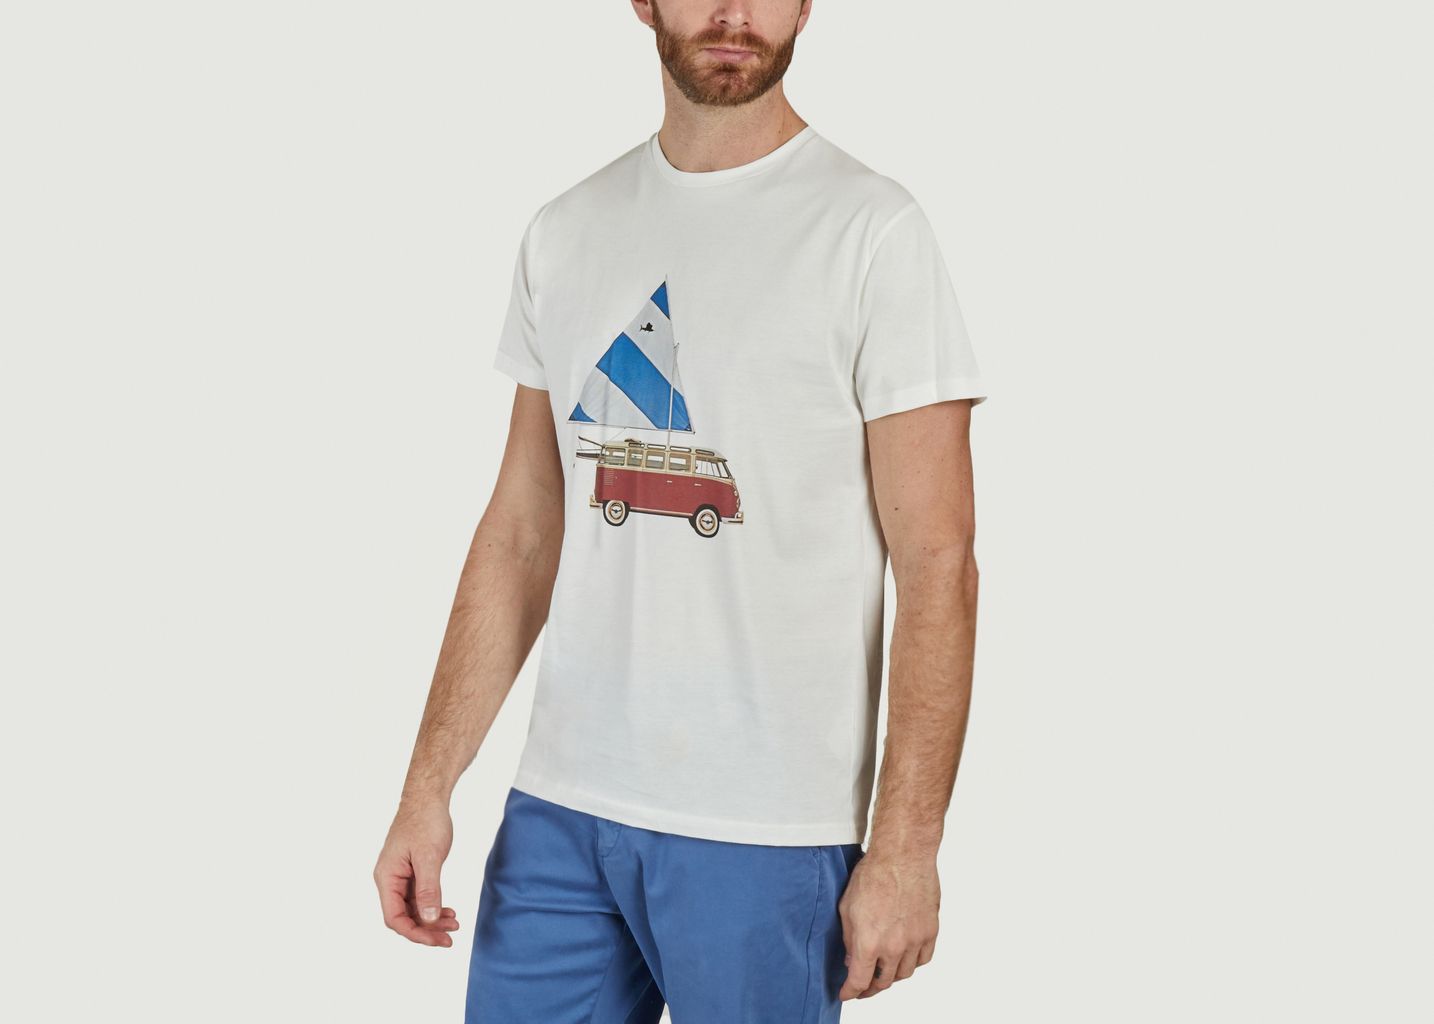 Sailing Van T-shirt - Bask in the Sun